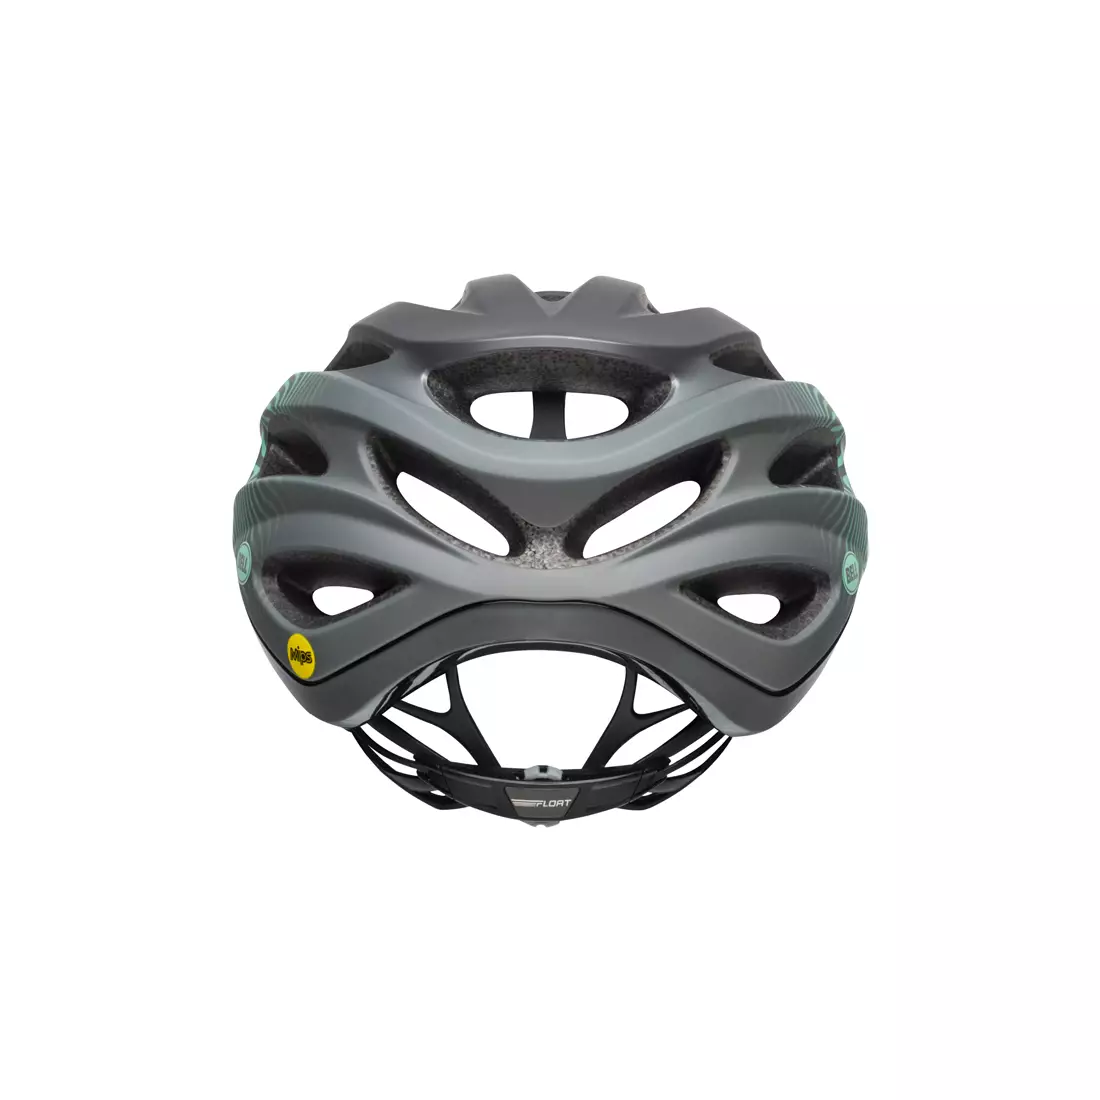 BELL FORMULA helma na silniční kolo, matte gloss gunmetal mint black